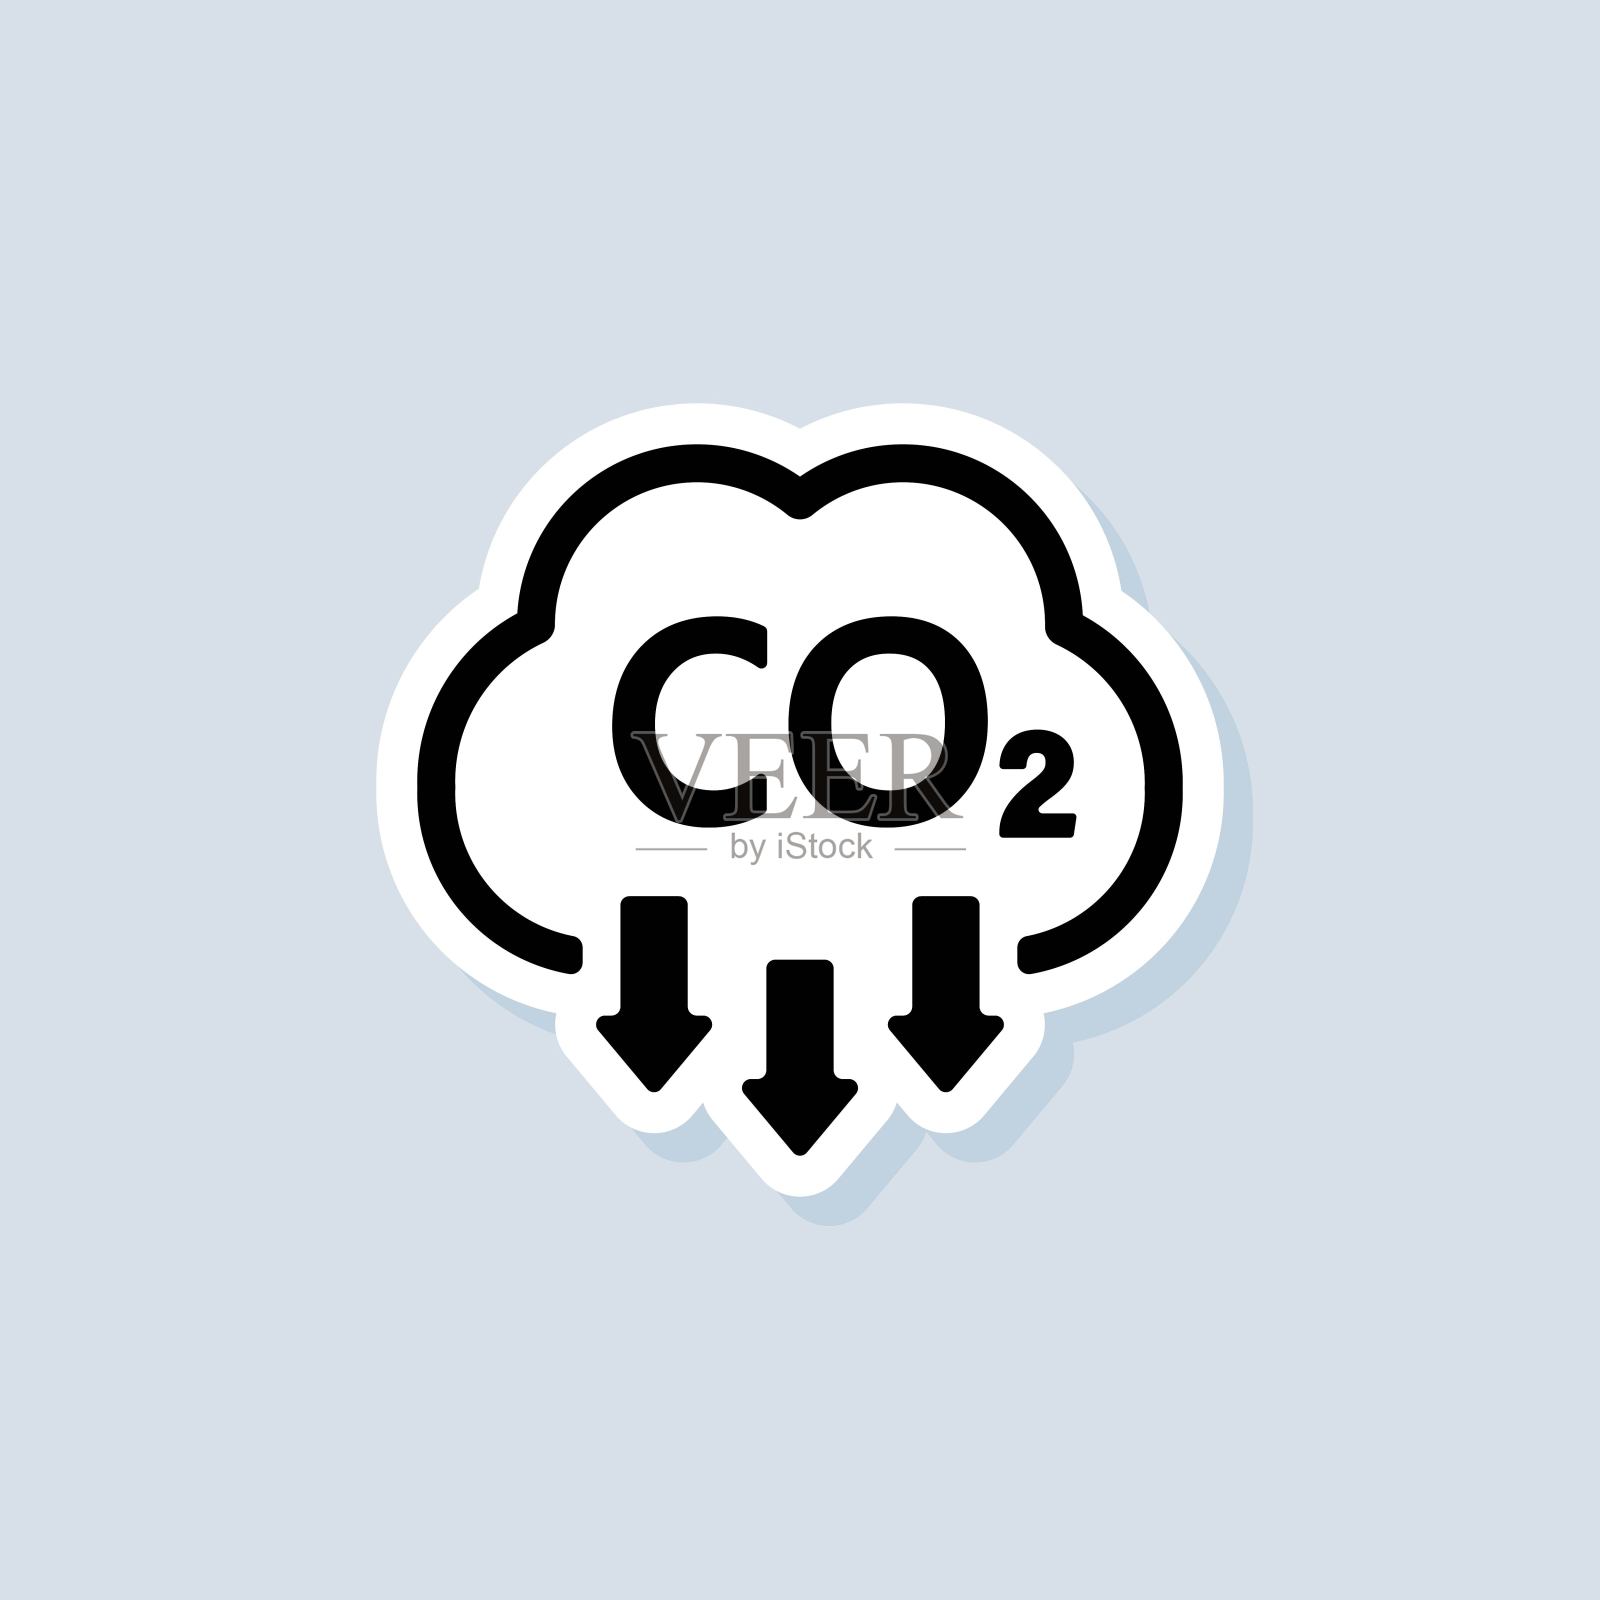 二氧化碳贴纸。二氧化碳排放的图标或标志。二氧化碳的排放量。矢量在孤立的白色背景。每股收益10图标素材